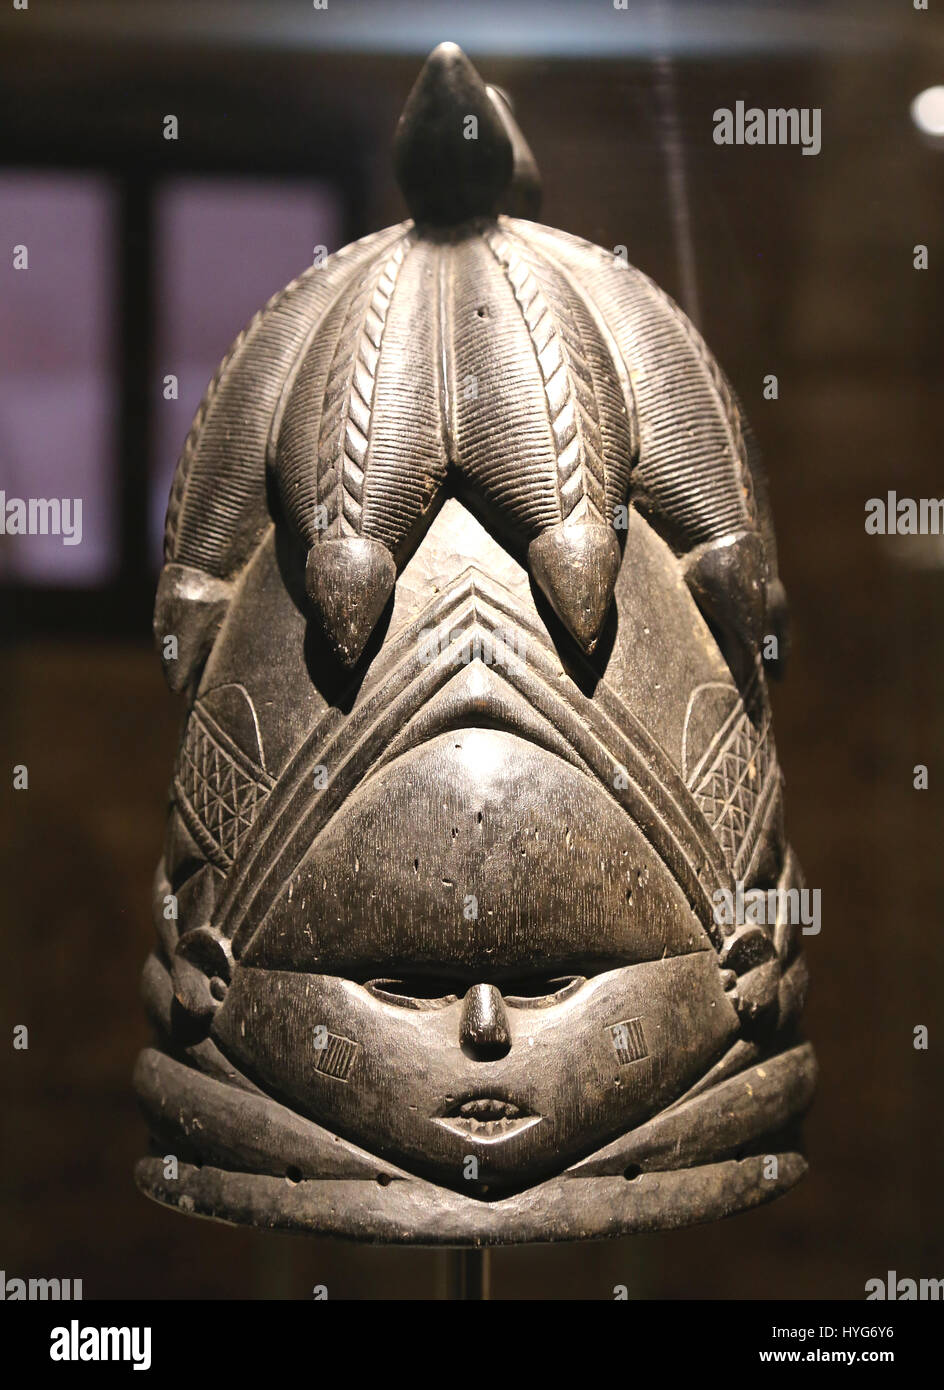 Sowei Helm Maske für weibliche Ritualtänze. Mende, Sierra Leone. Liberia. Anfang des 20. Jahrhunderts. Holz geschnitzt, Stockfoto